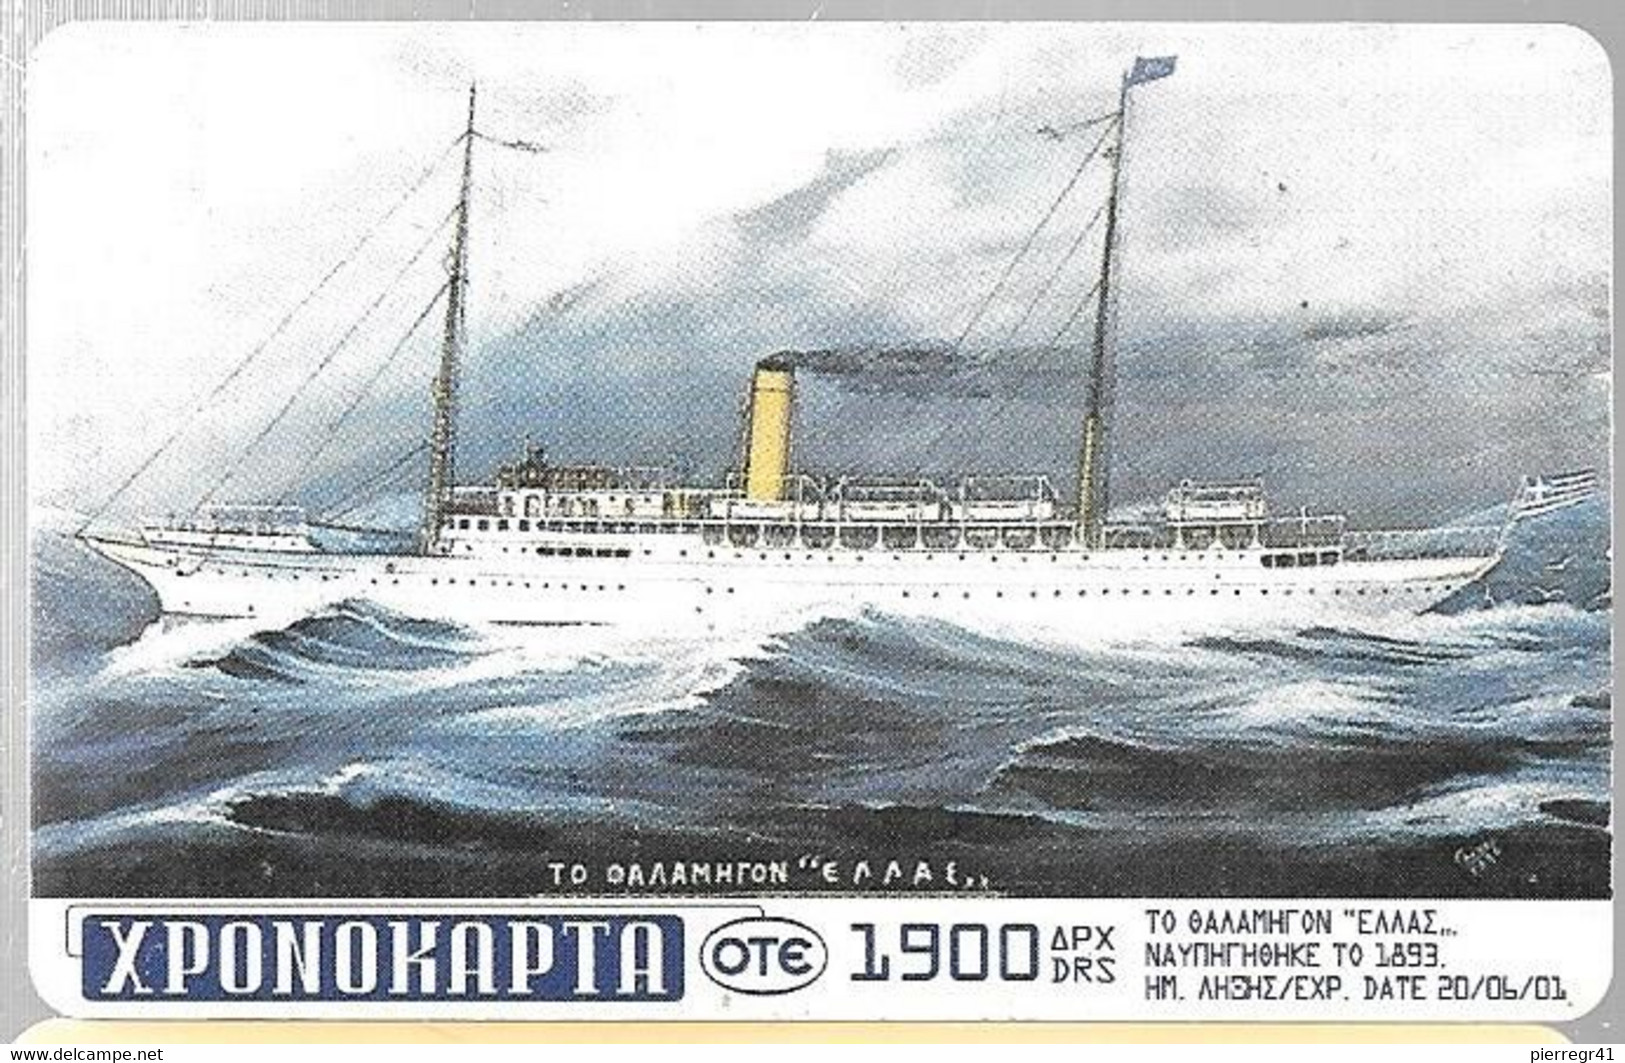 PP-GREC-VAPEUR-1900 Drs-BATEAU VAPEUR De 1893-TBE/RARE - Schiffe